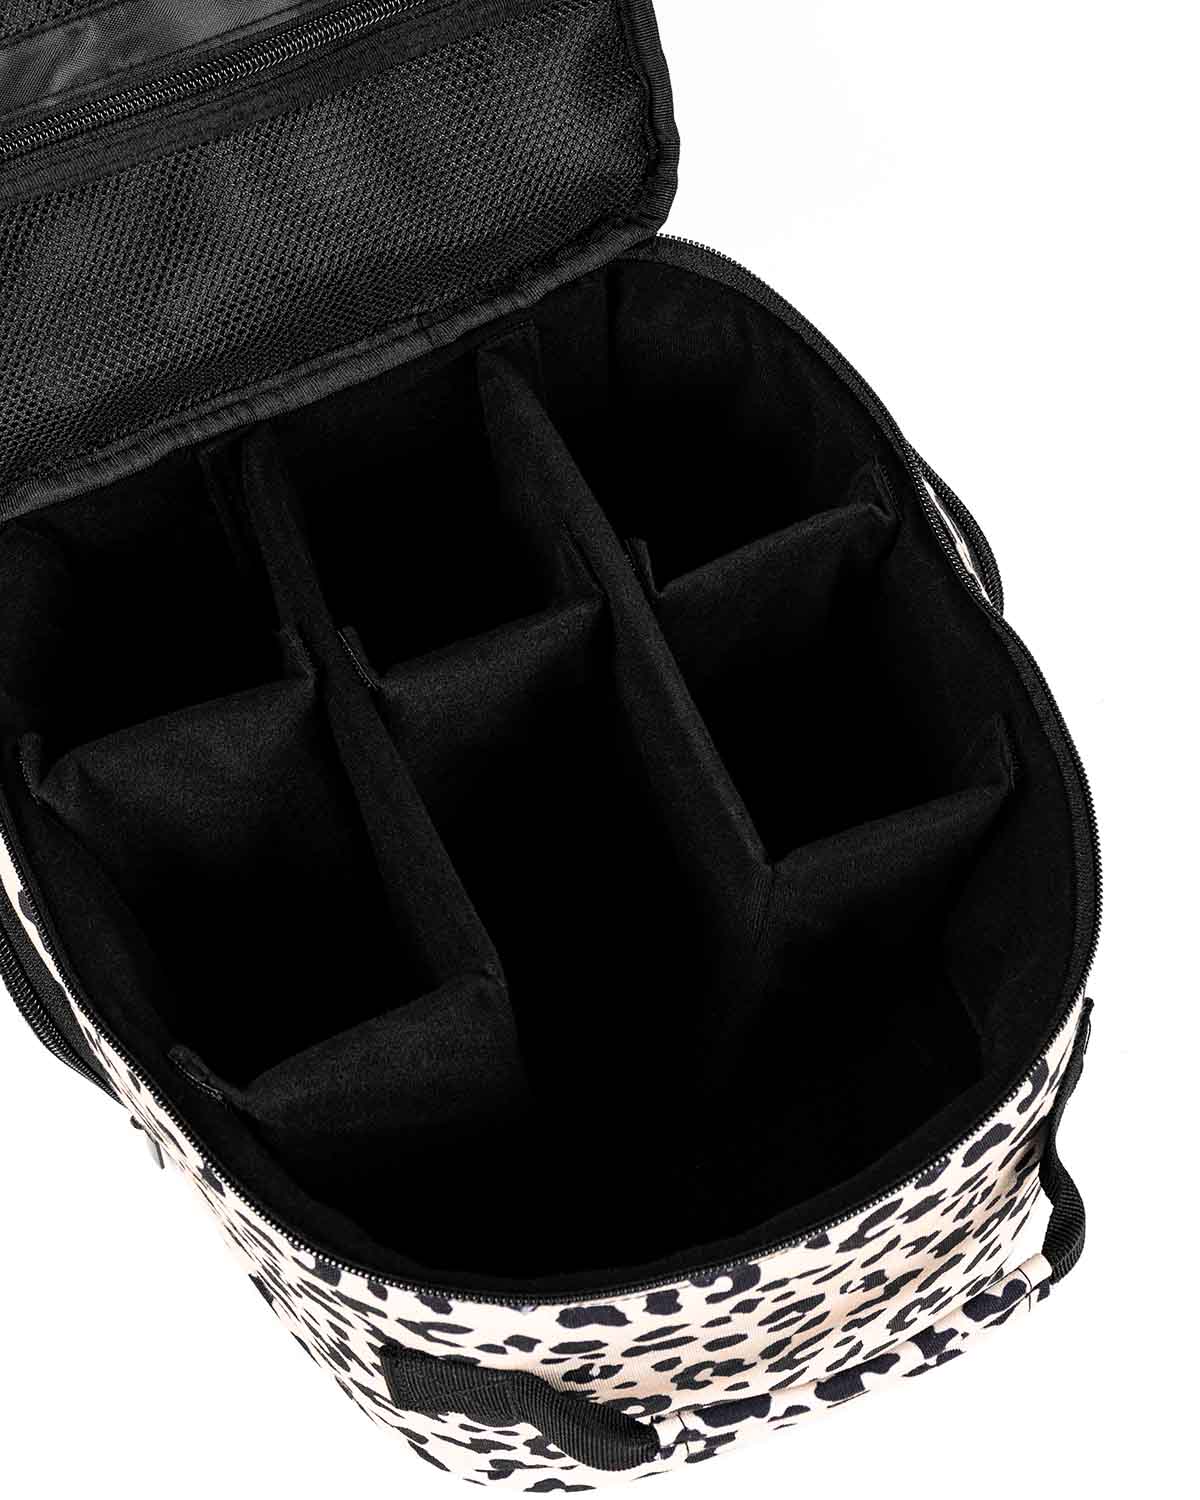 inside stylish camera backpack